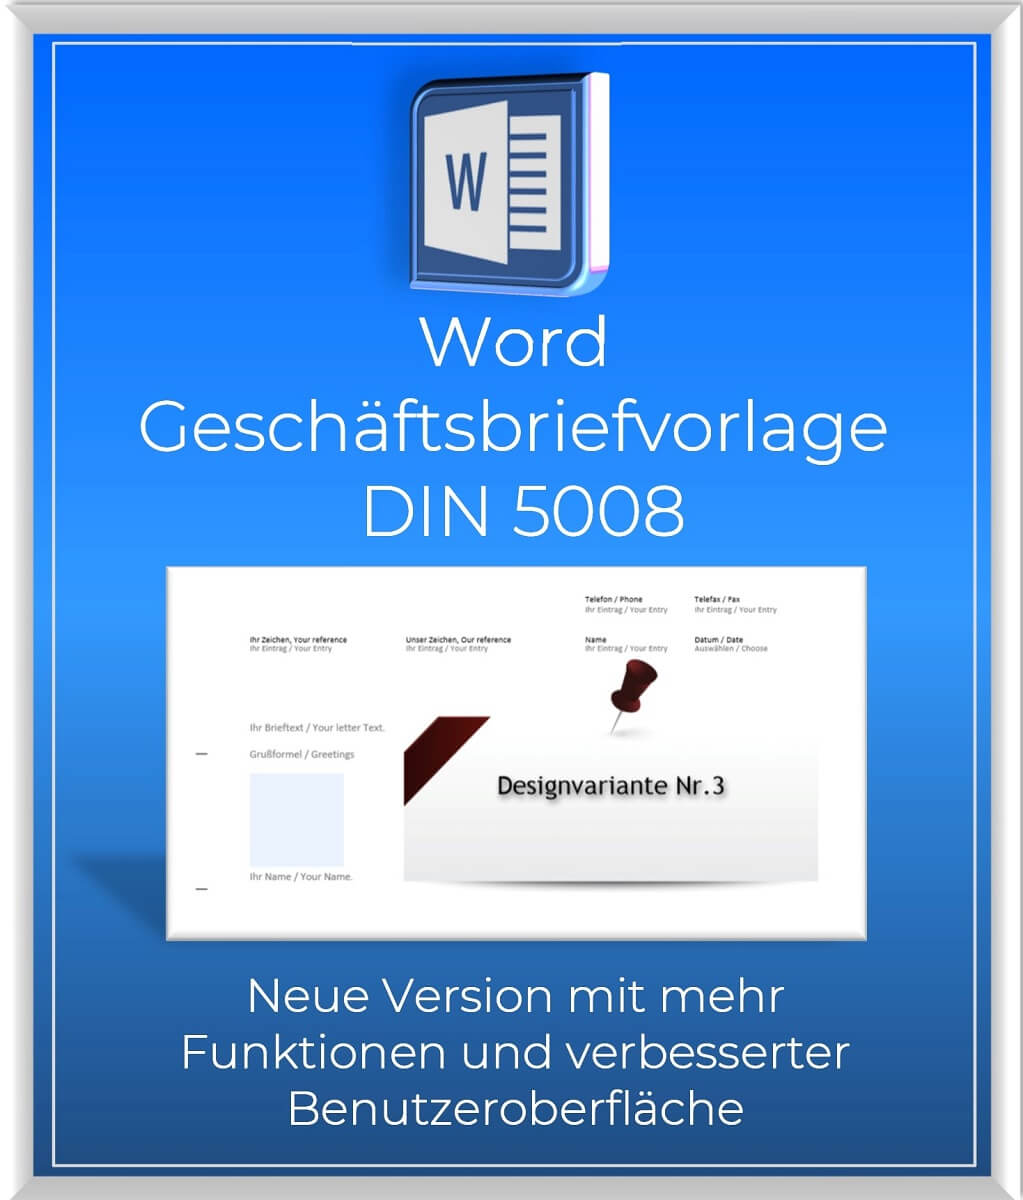 Word_Geschaeftsbriefvorlage_DIN5008_Neue Version